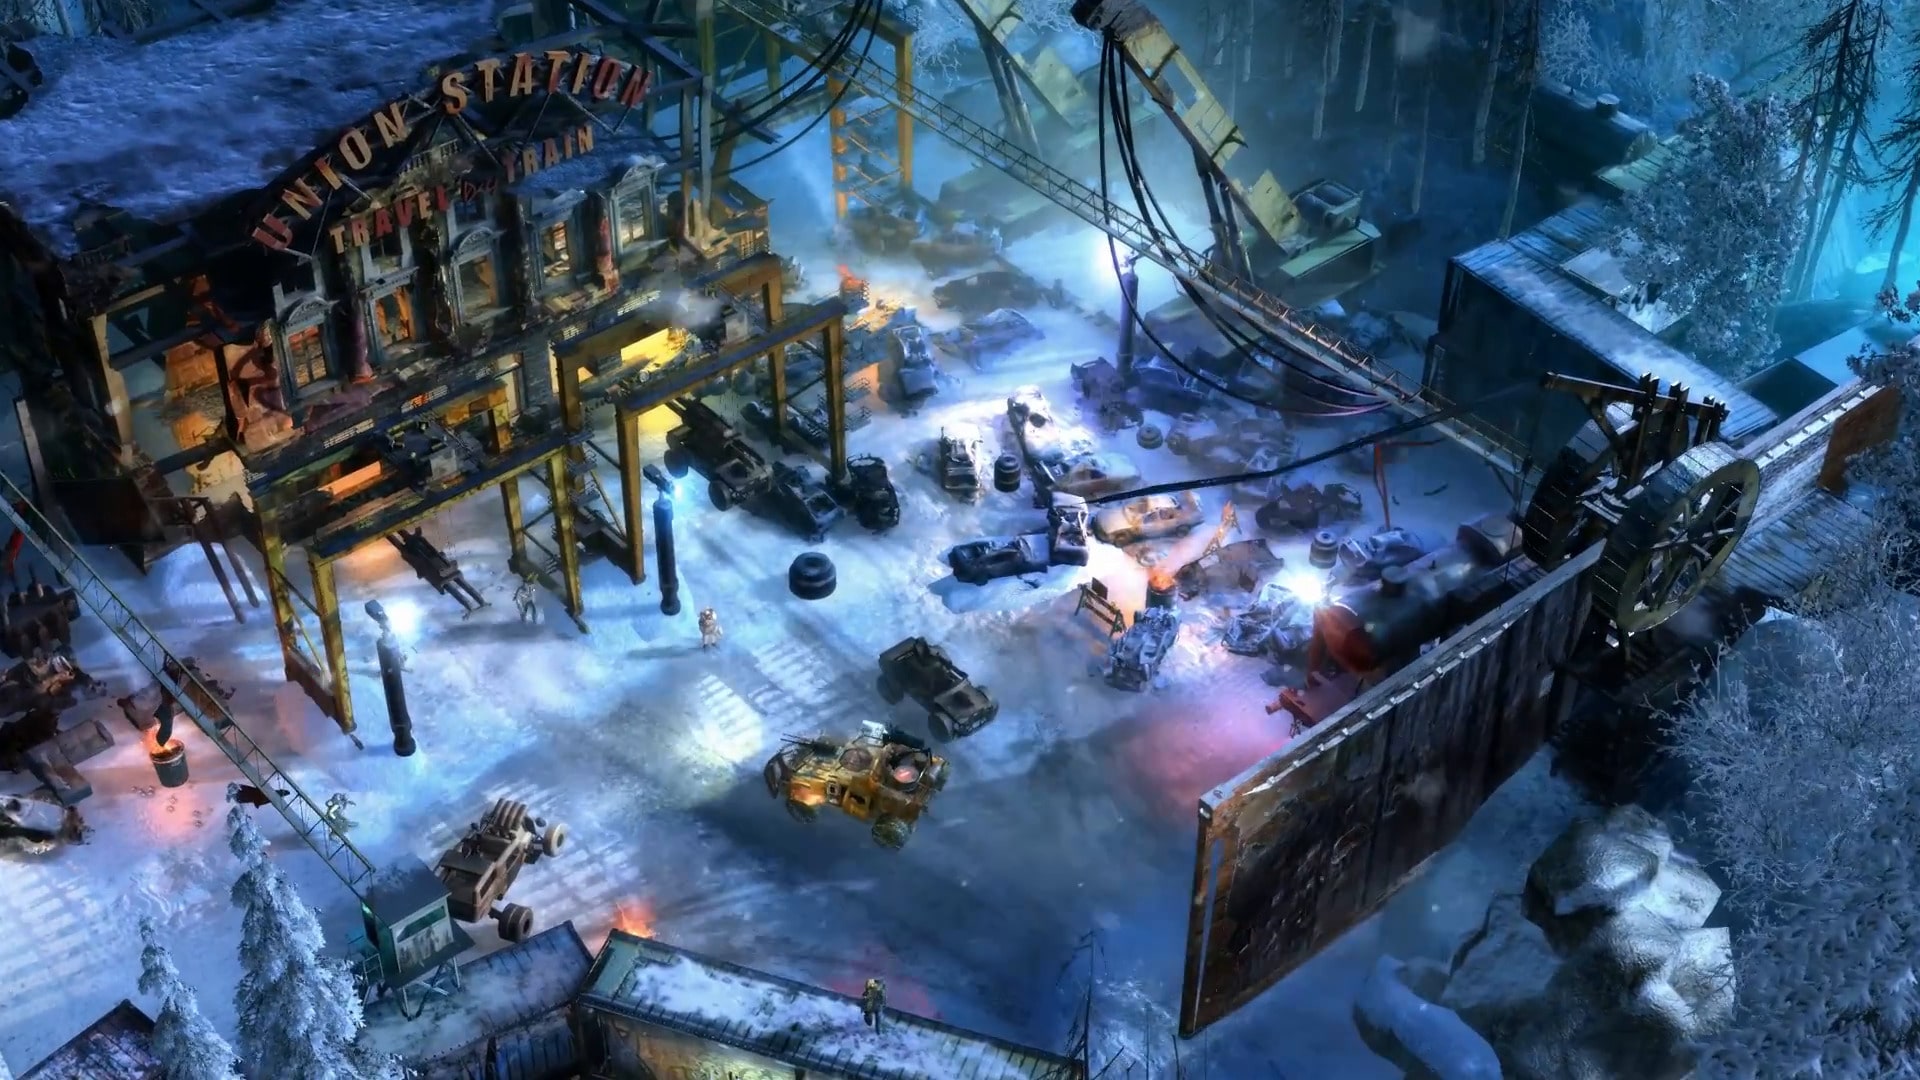 Primeras impresiones del Preview de Wasteland 3 gamersrd